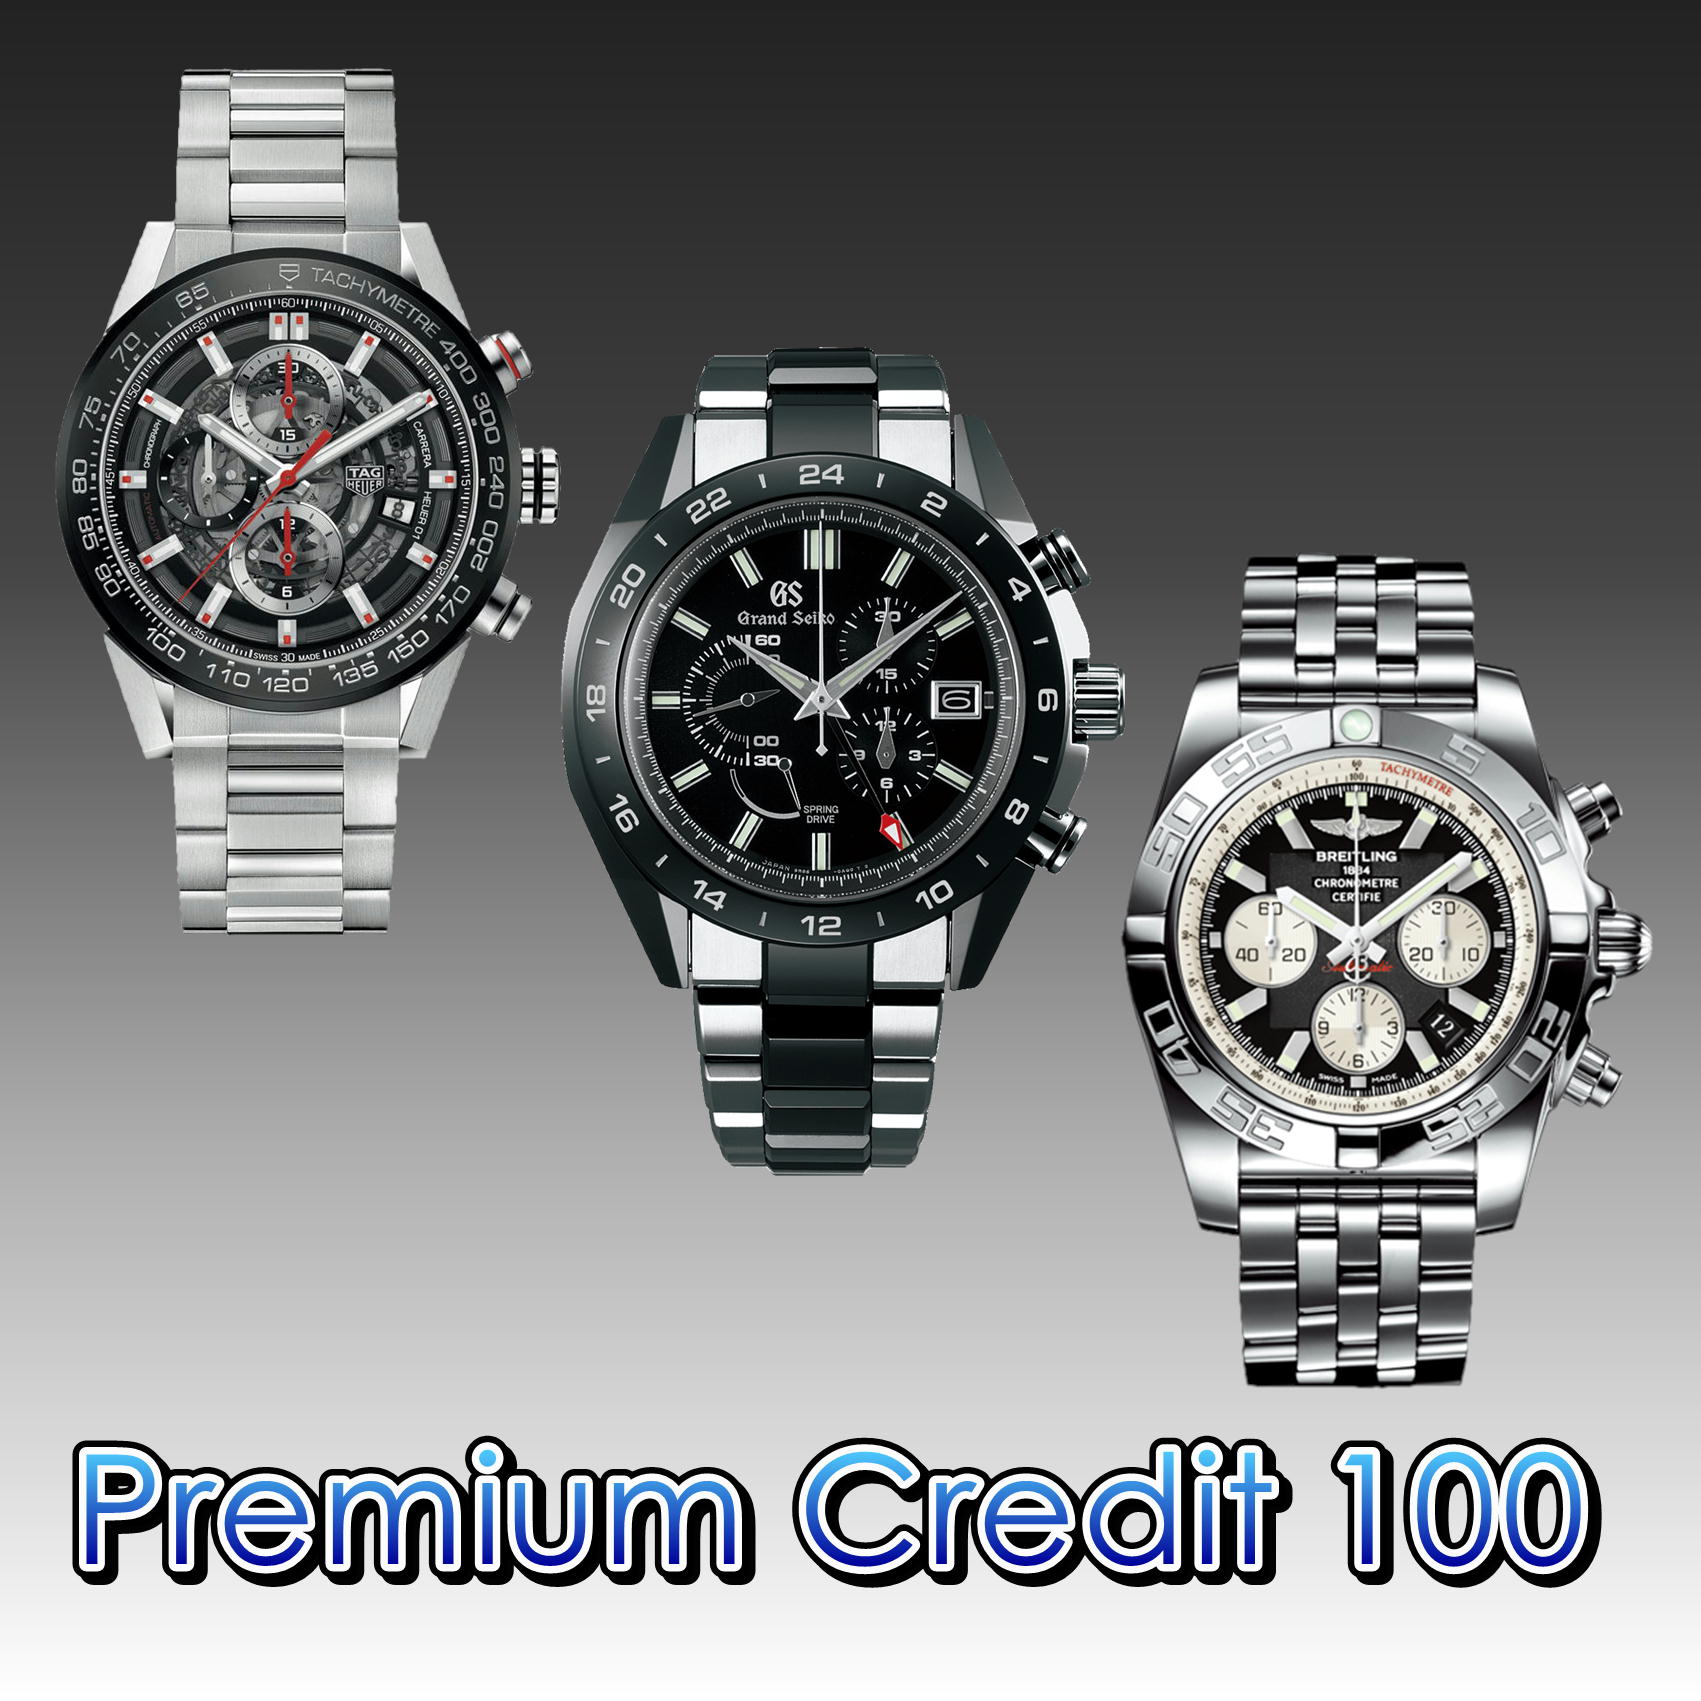 Premium Credit 100